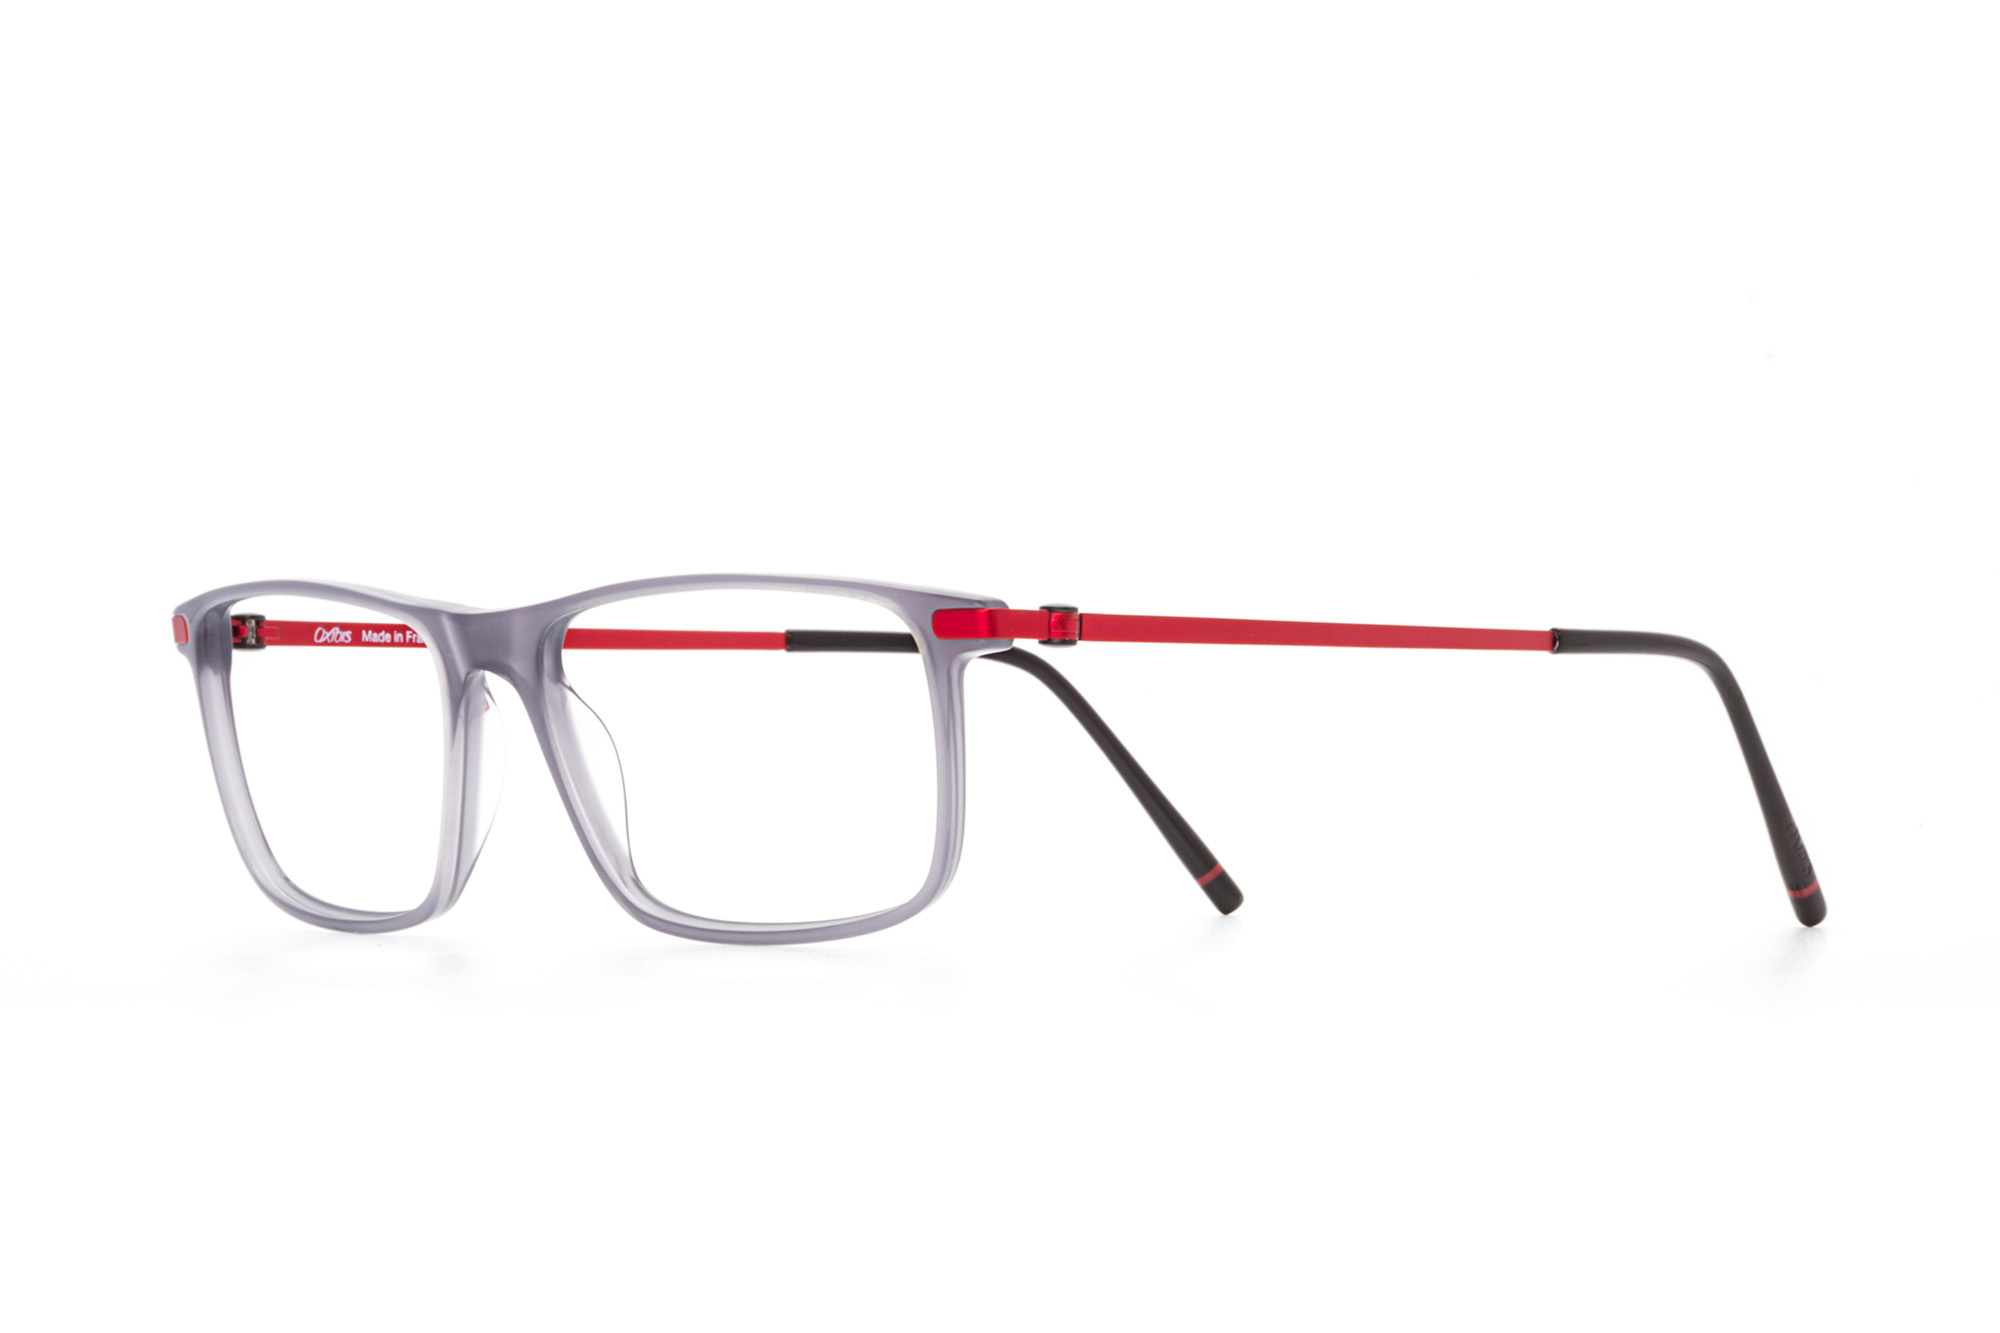 Kullanıma hazır optik tarzda işlenmiş camları ve optik uyumlu çerçevesiyle Oxibis Loop LO8C2 52 orta ekartman gri ve kırmızı renkli dikdörtgen model unisex gözlüğü optisyen veya gözlükçülerin sunacağı numarasız veya numaralı cam özelleştirmeleriyle size en yakın gözlükçüden satın alabilirsiniz.